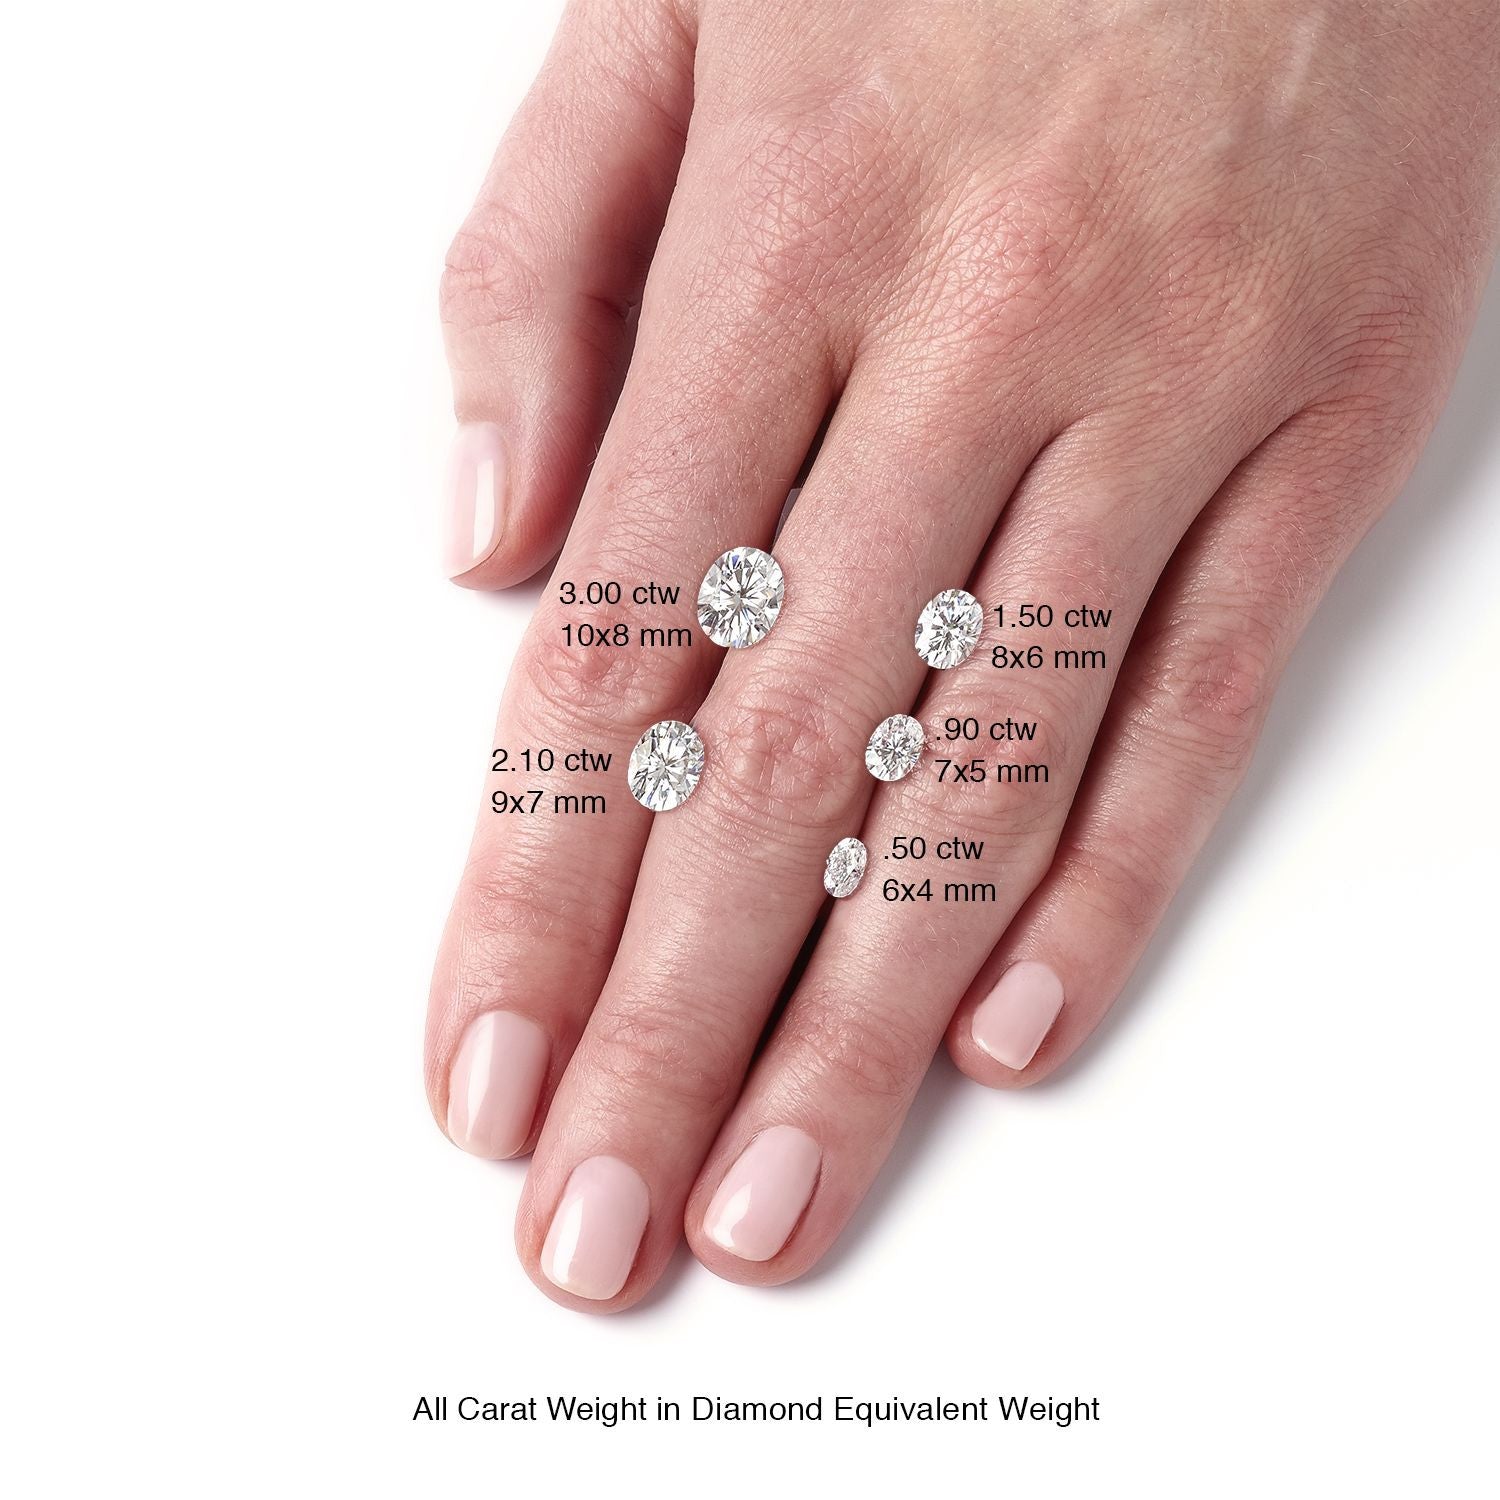 oval moissanite engagement rings